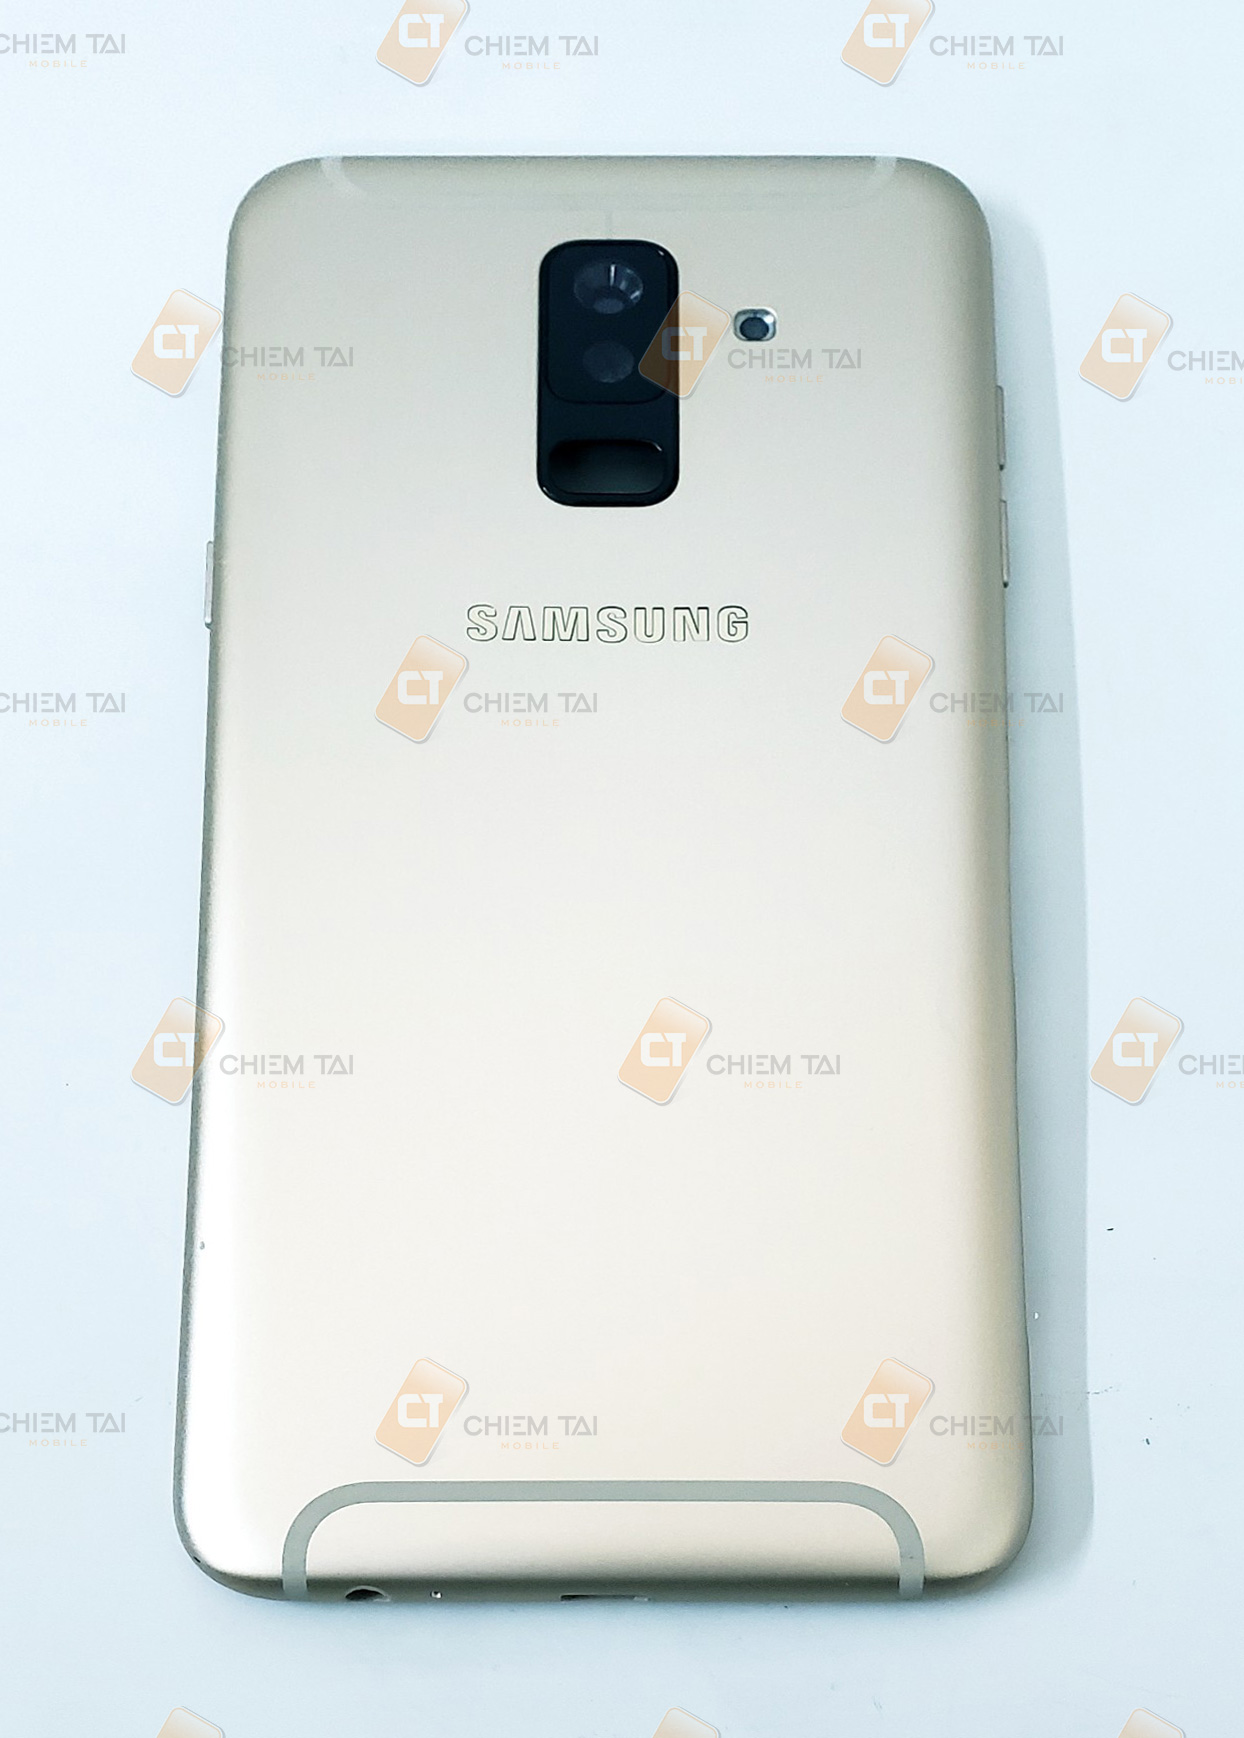 Bộ vỏ Samsung Galaxy A6+ 2018 zin công ty (màu đen, vàng, xanh, tím)